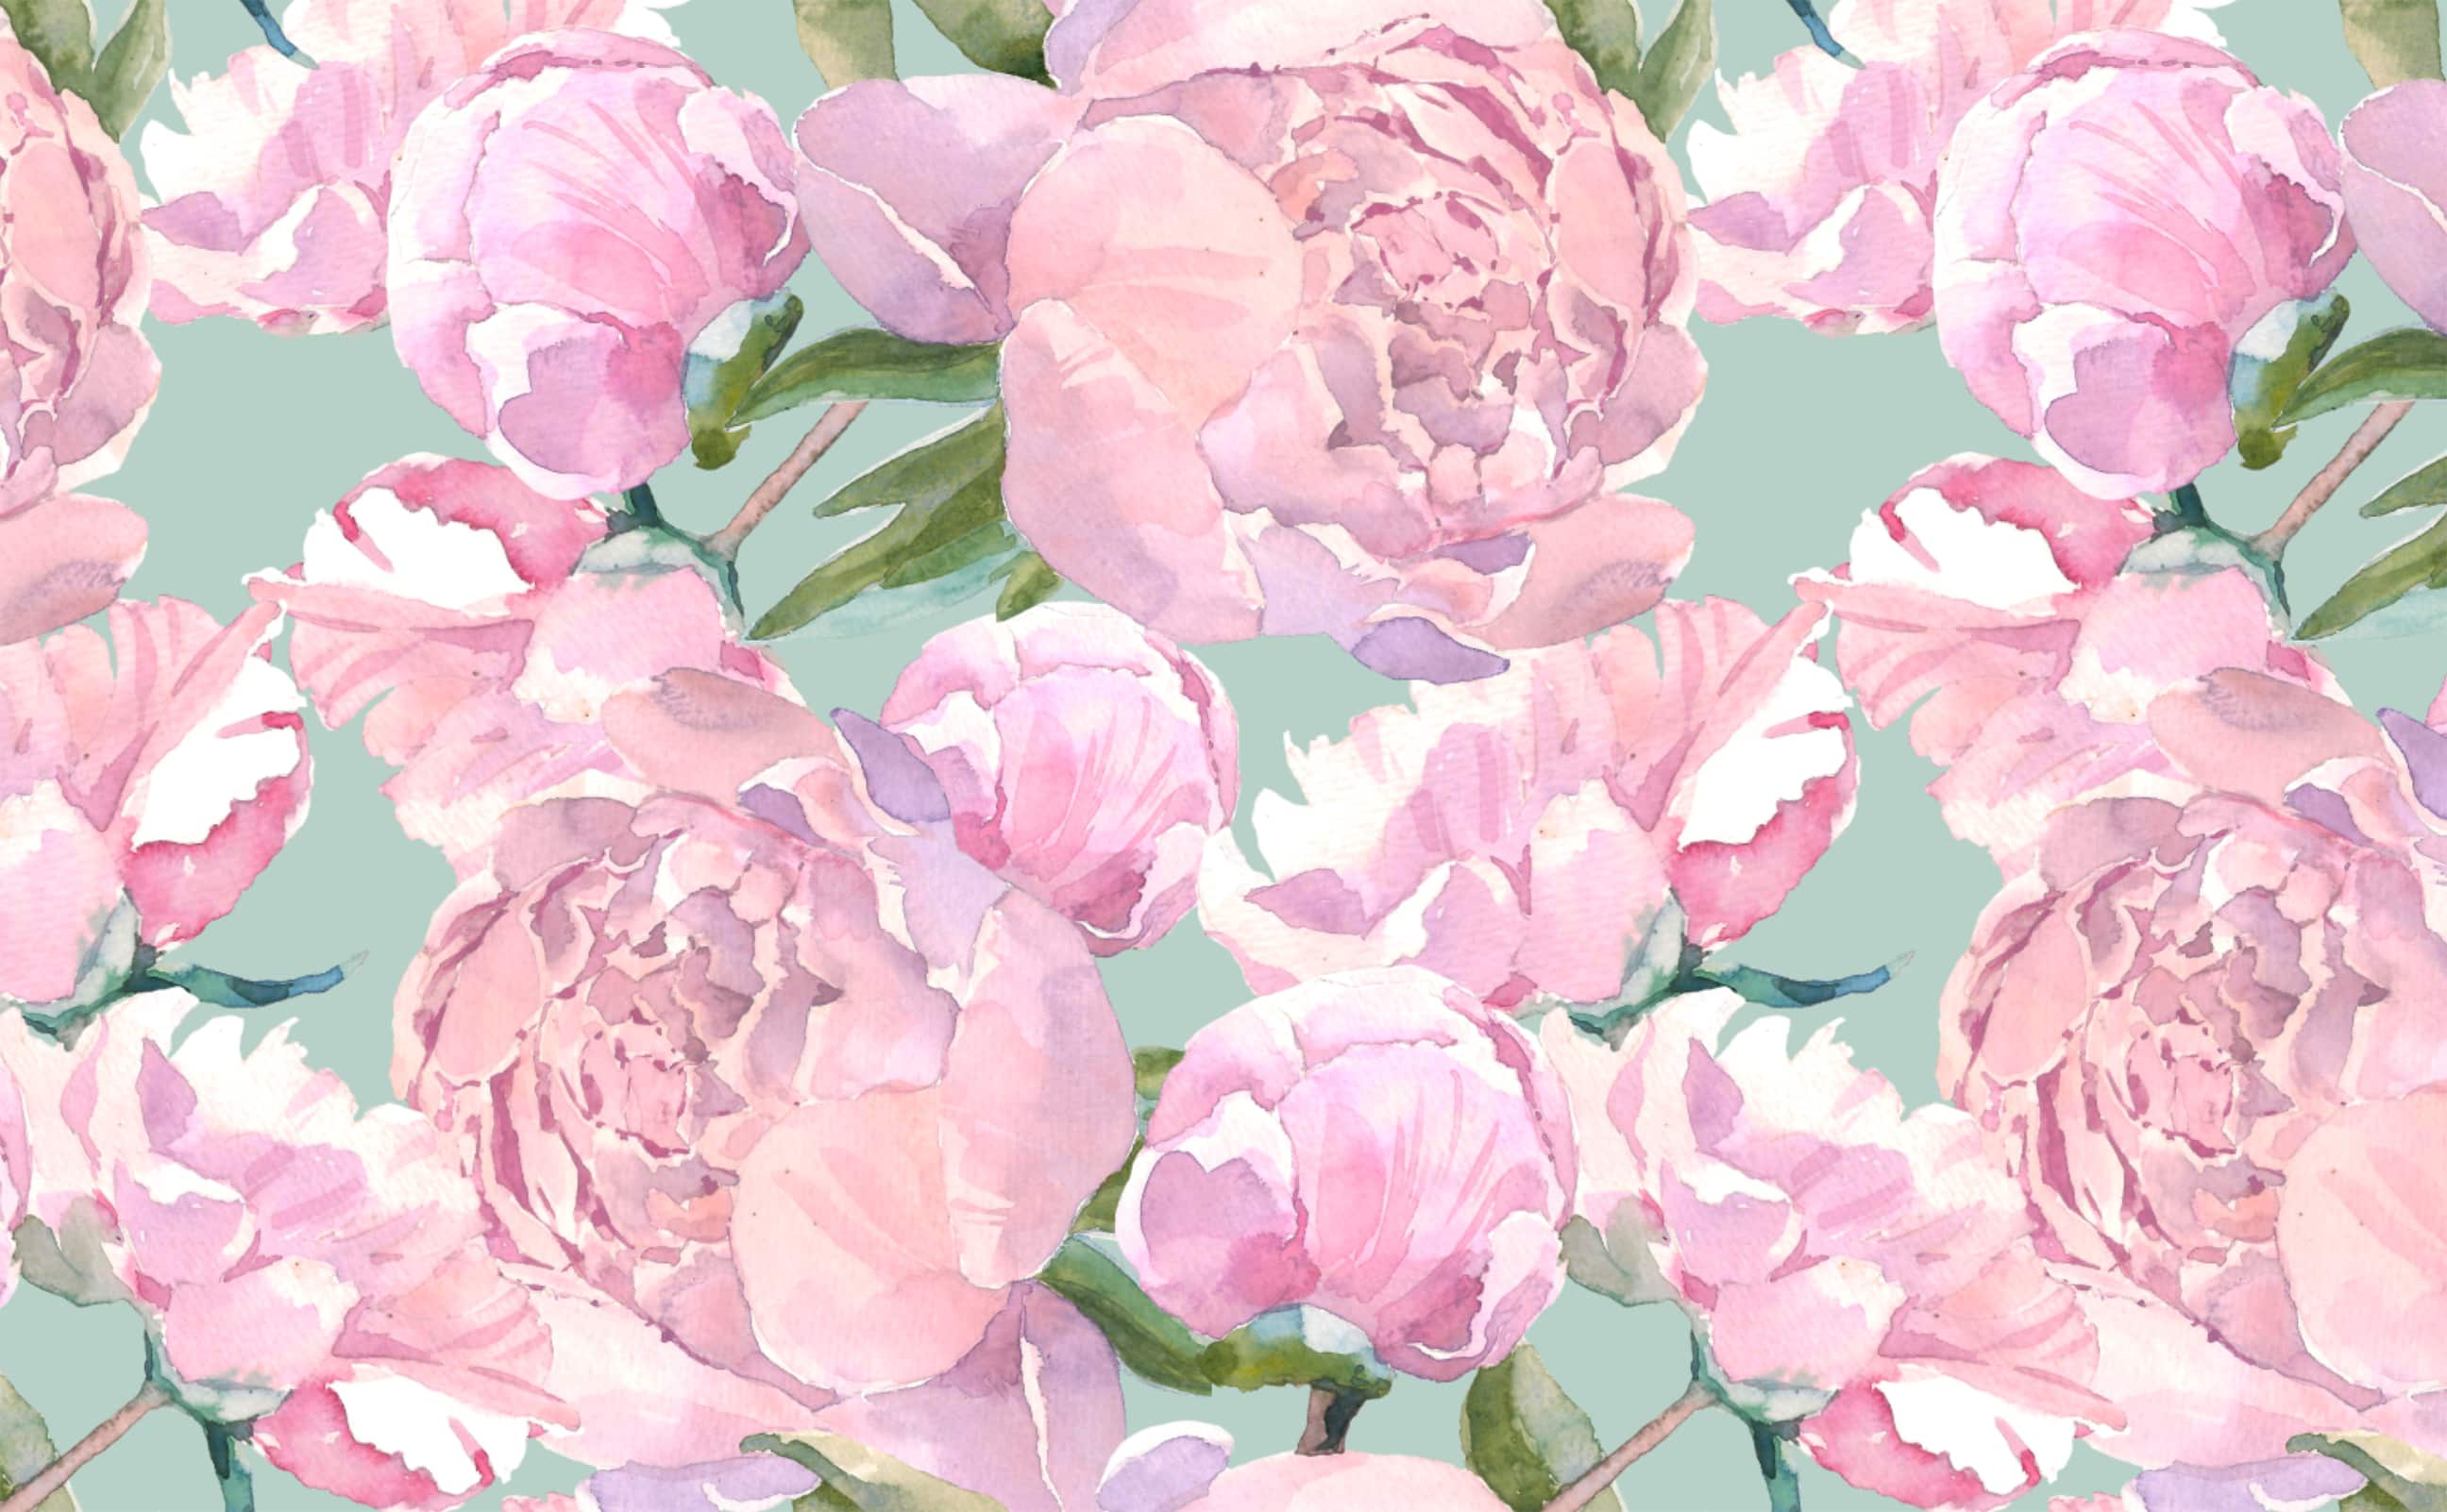 Hình nền hoa cúc hồng cổ điển nước sơn: Với những hoa cúc hồng cổ điển đang nở rực rỡ, kết hợp với đường nét mảnh mai và đẹp tinh tế như nước sơn trên hình nền, sẽ làm cho chiếc smartphone của bạn đẹp đến ngỡ ngàng. Hãy mở ứng dụng nền tảng yêu thích của bạn để tận hưởng trọn bộ mẫu hình nền đầy nghệ thuật này.